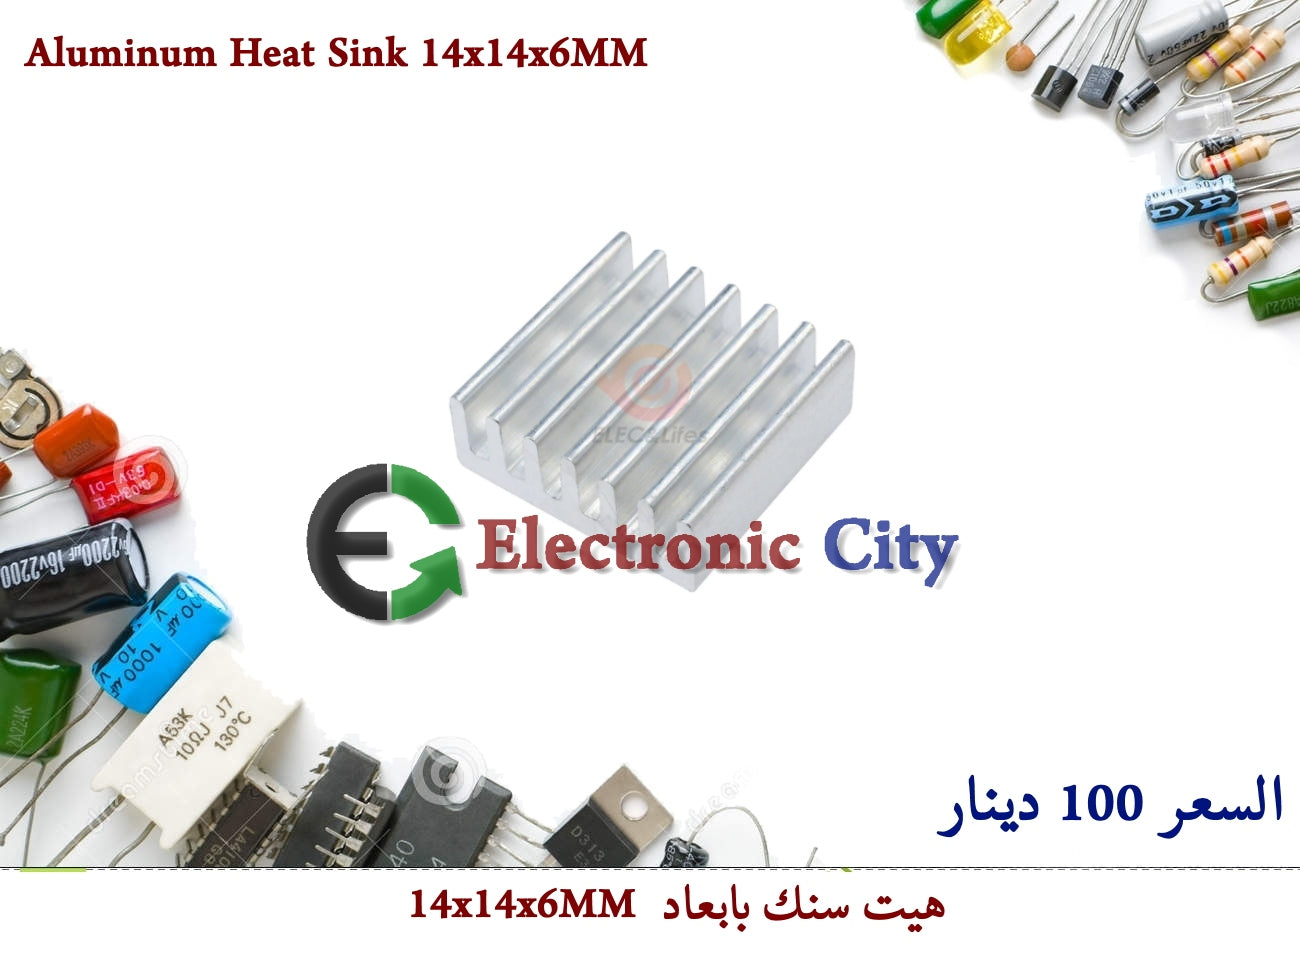 Aluminum Heat Sink 14x14x6MM   05047010